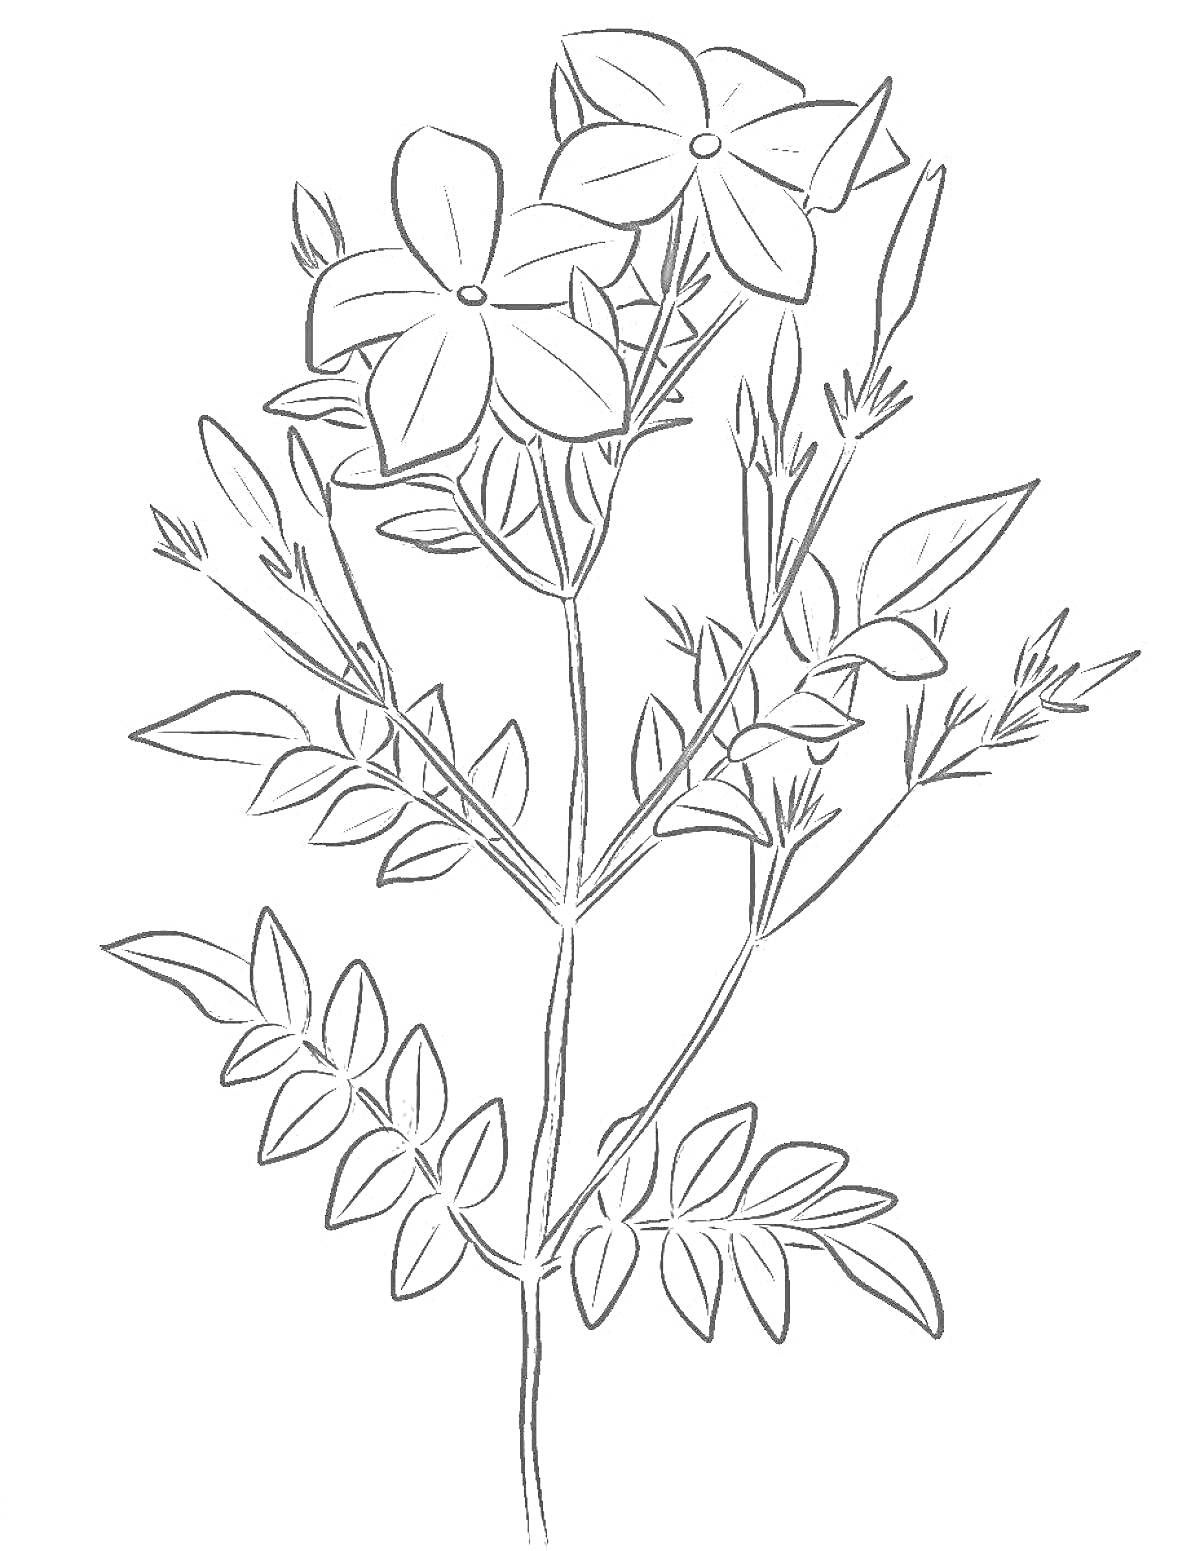 Раскраска Рисунок зверобоя с цветками, листьями и стеблем